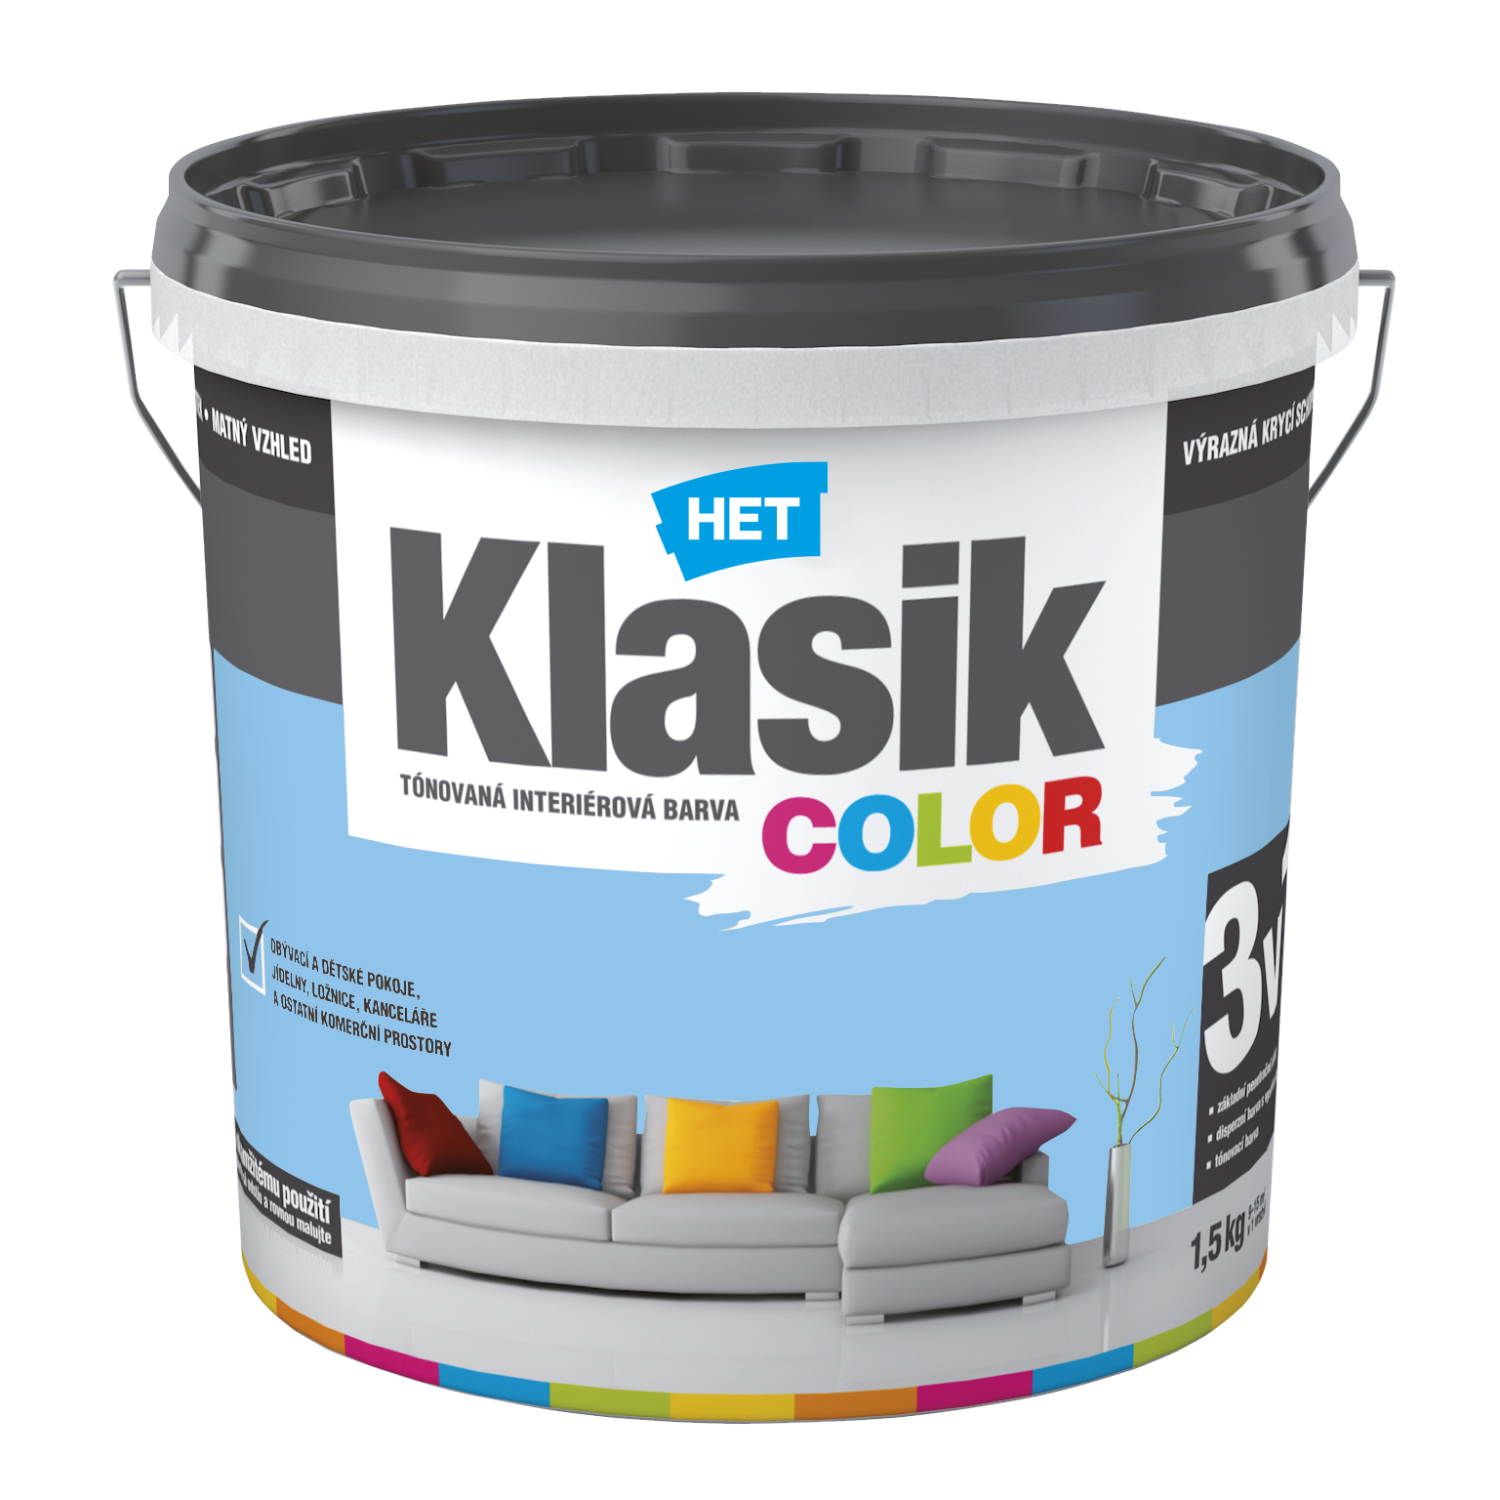 HET Klasik COLOR tónovaná interiérová akrylátová disperzná oteruvzdorná farba 1,5 kg, KC0347 - fialový orgovánový